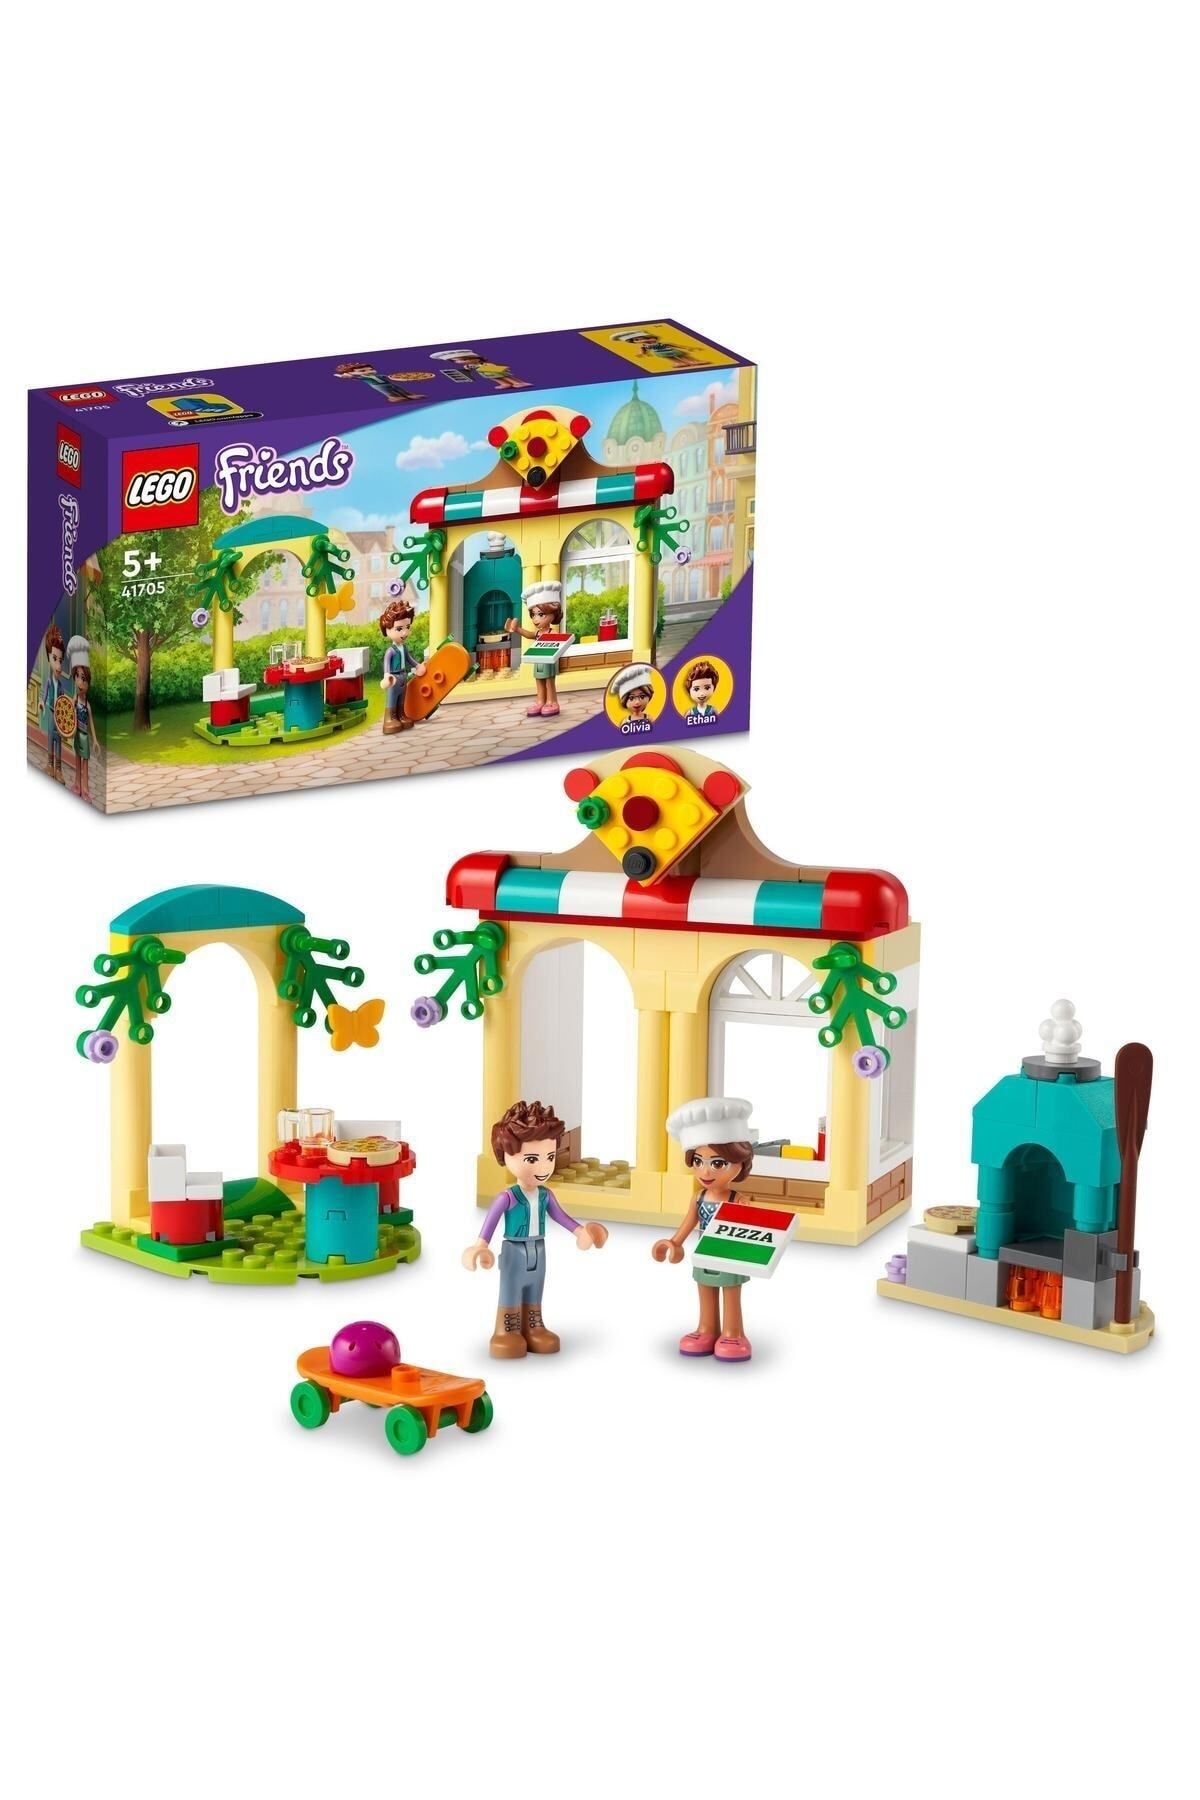 LEGO ® Friends Heartlake City Pizzacısı 41705 -5 Yaş ve Üzeri Çocuklar için Yapım Seti (144 Parça)